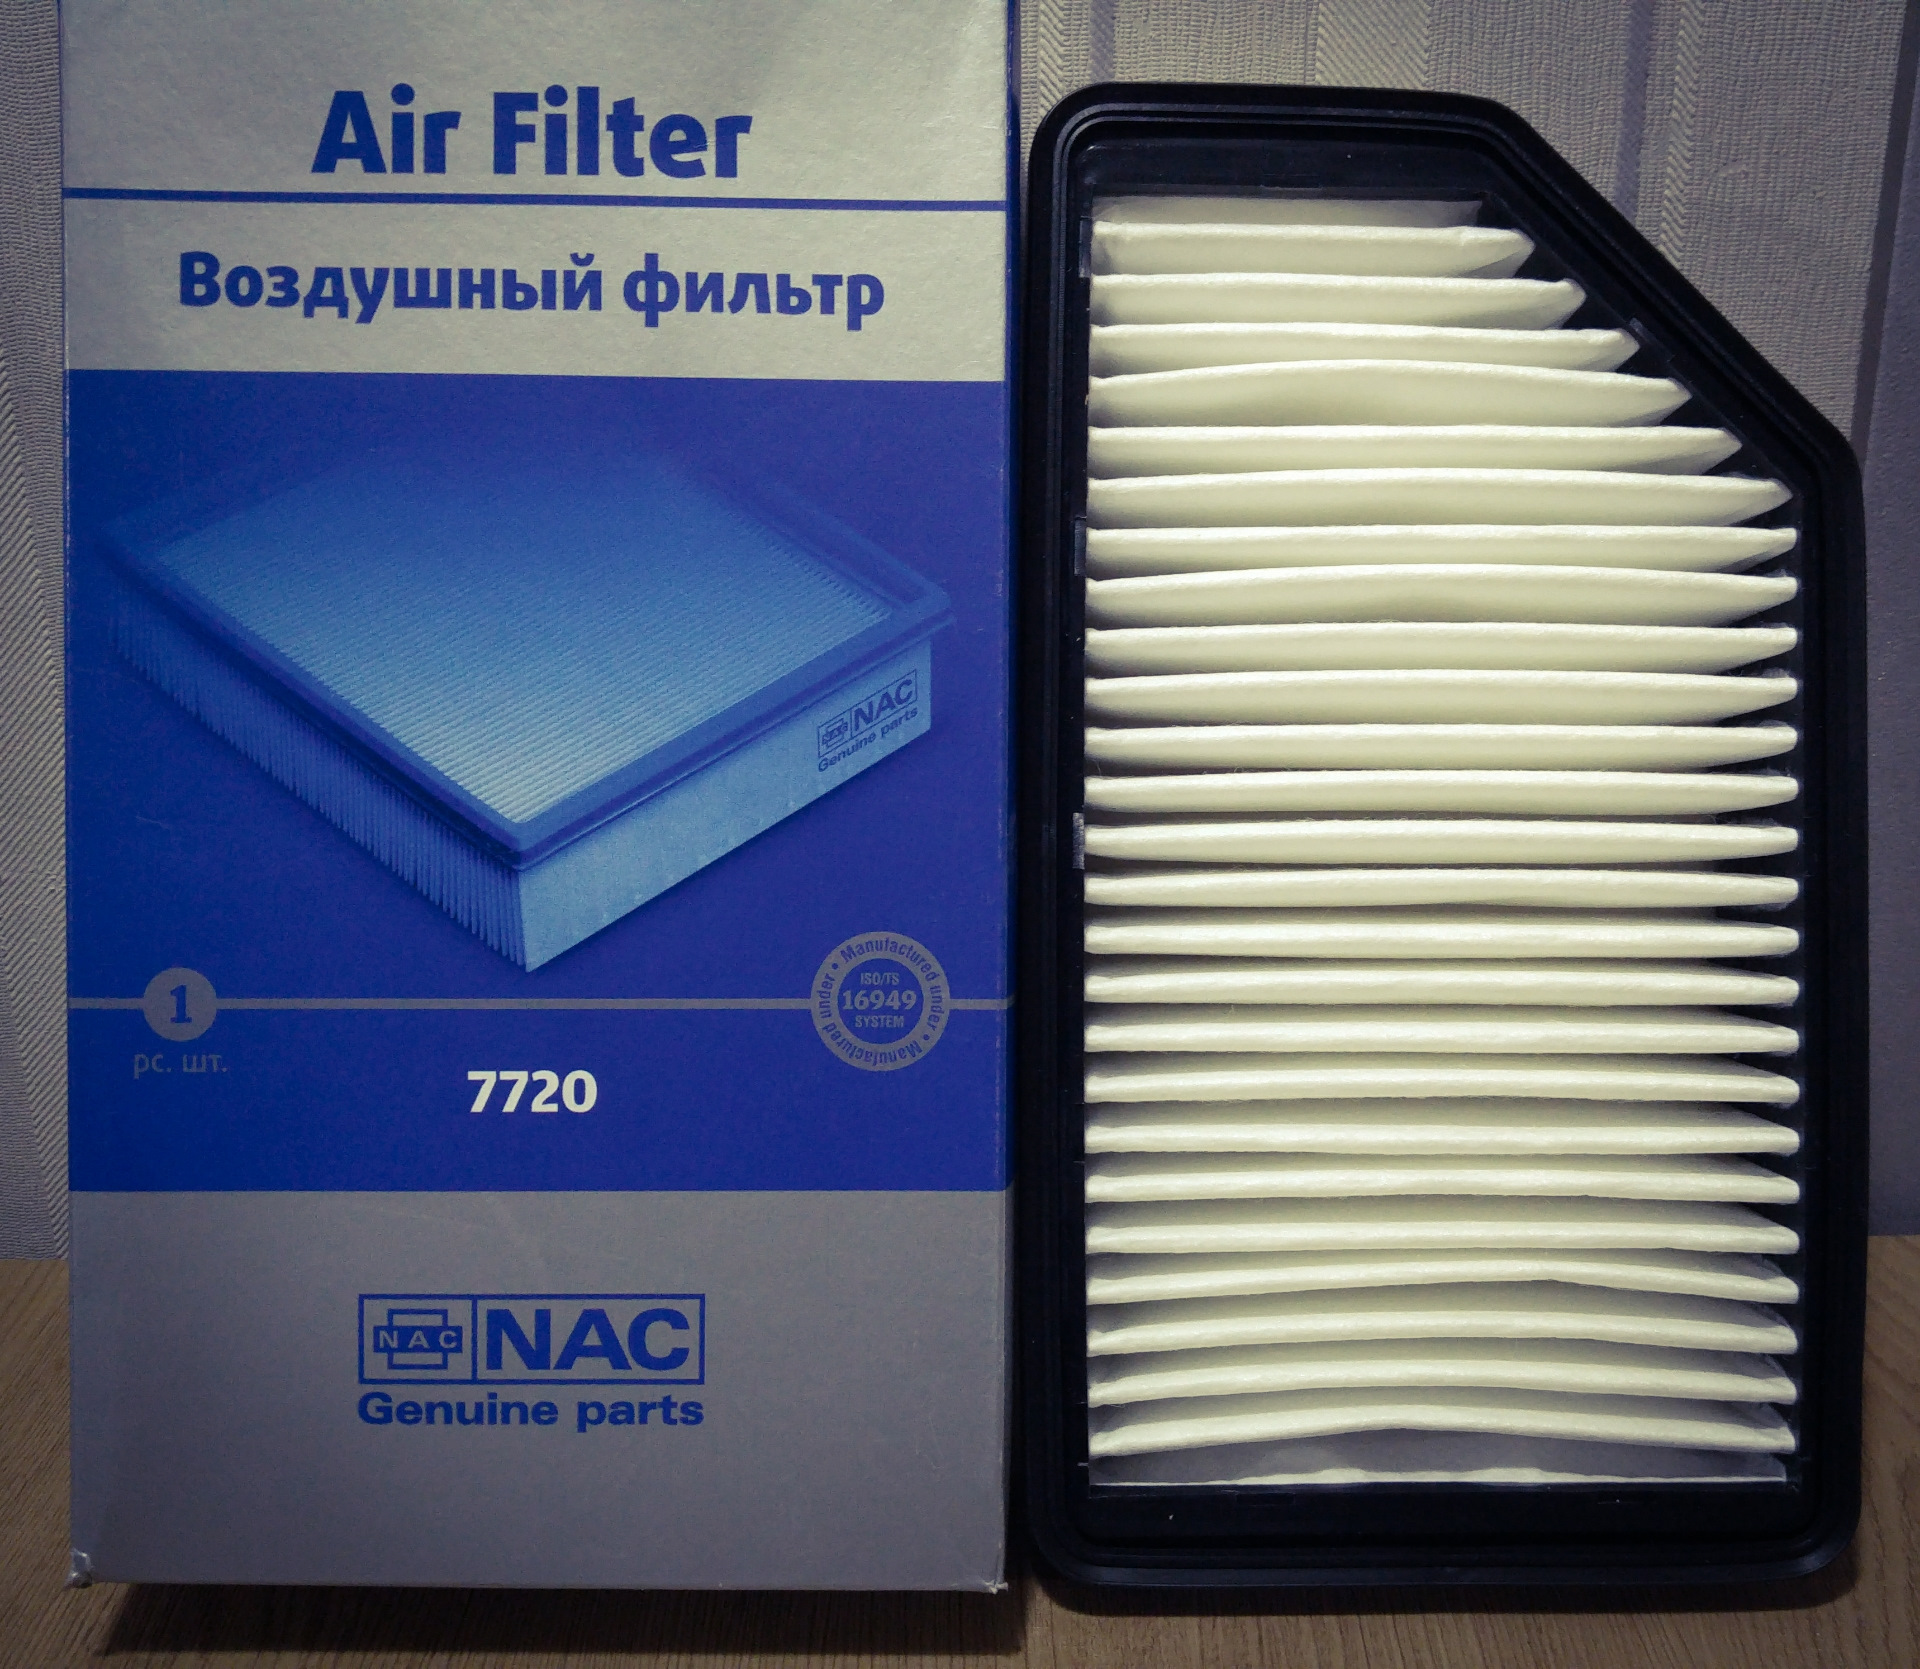 Фильтр воздушный хендай солярис 1.6. Фильтр воздушный NAC 7720. Фильтр воздушный 7750 NAC. Фильтр воздушный Солярис 2011 1.6. Воздушный фильтр Солярис 1.6 2015.